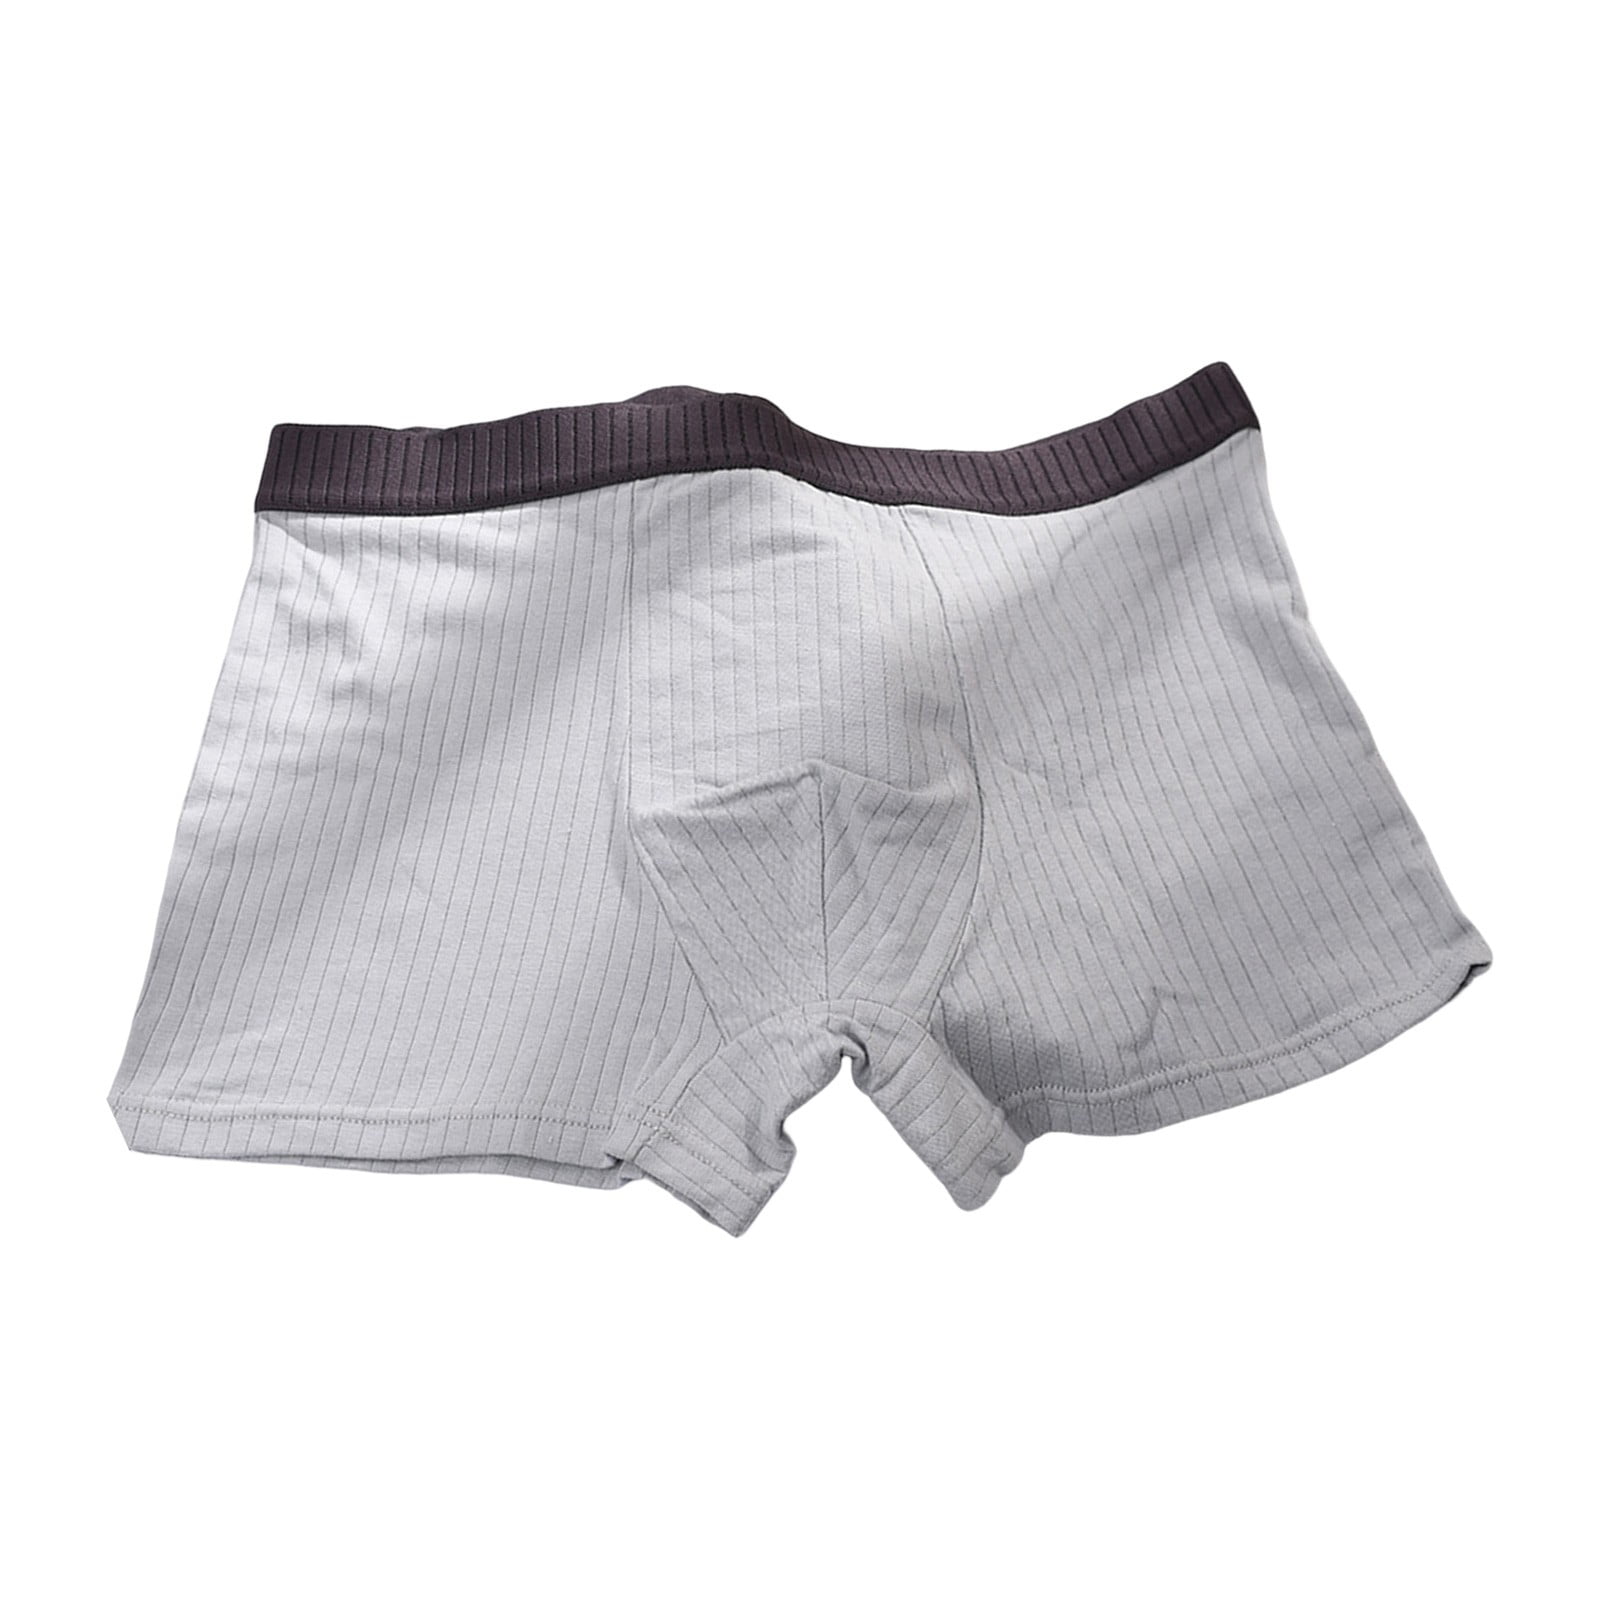 Durtebeua Men's Underwear Performance Boxer Briefs with Fly Pouch Men'S  Boxer Briefs Long Leg